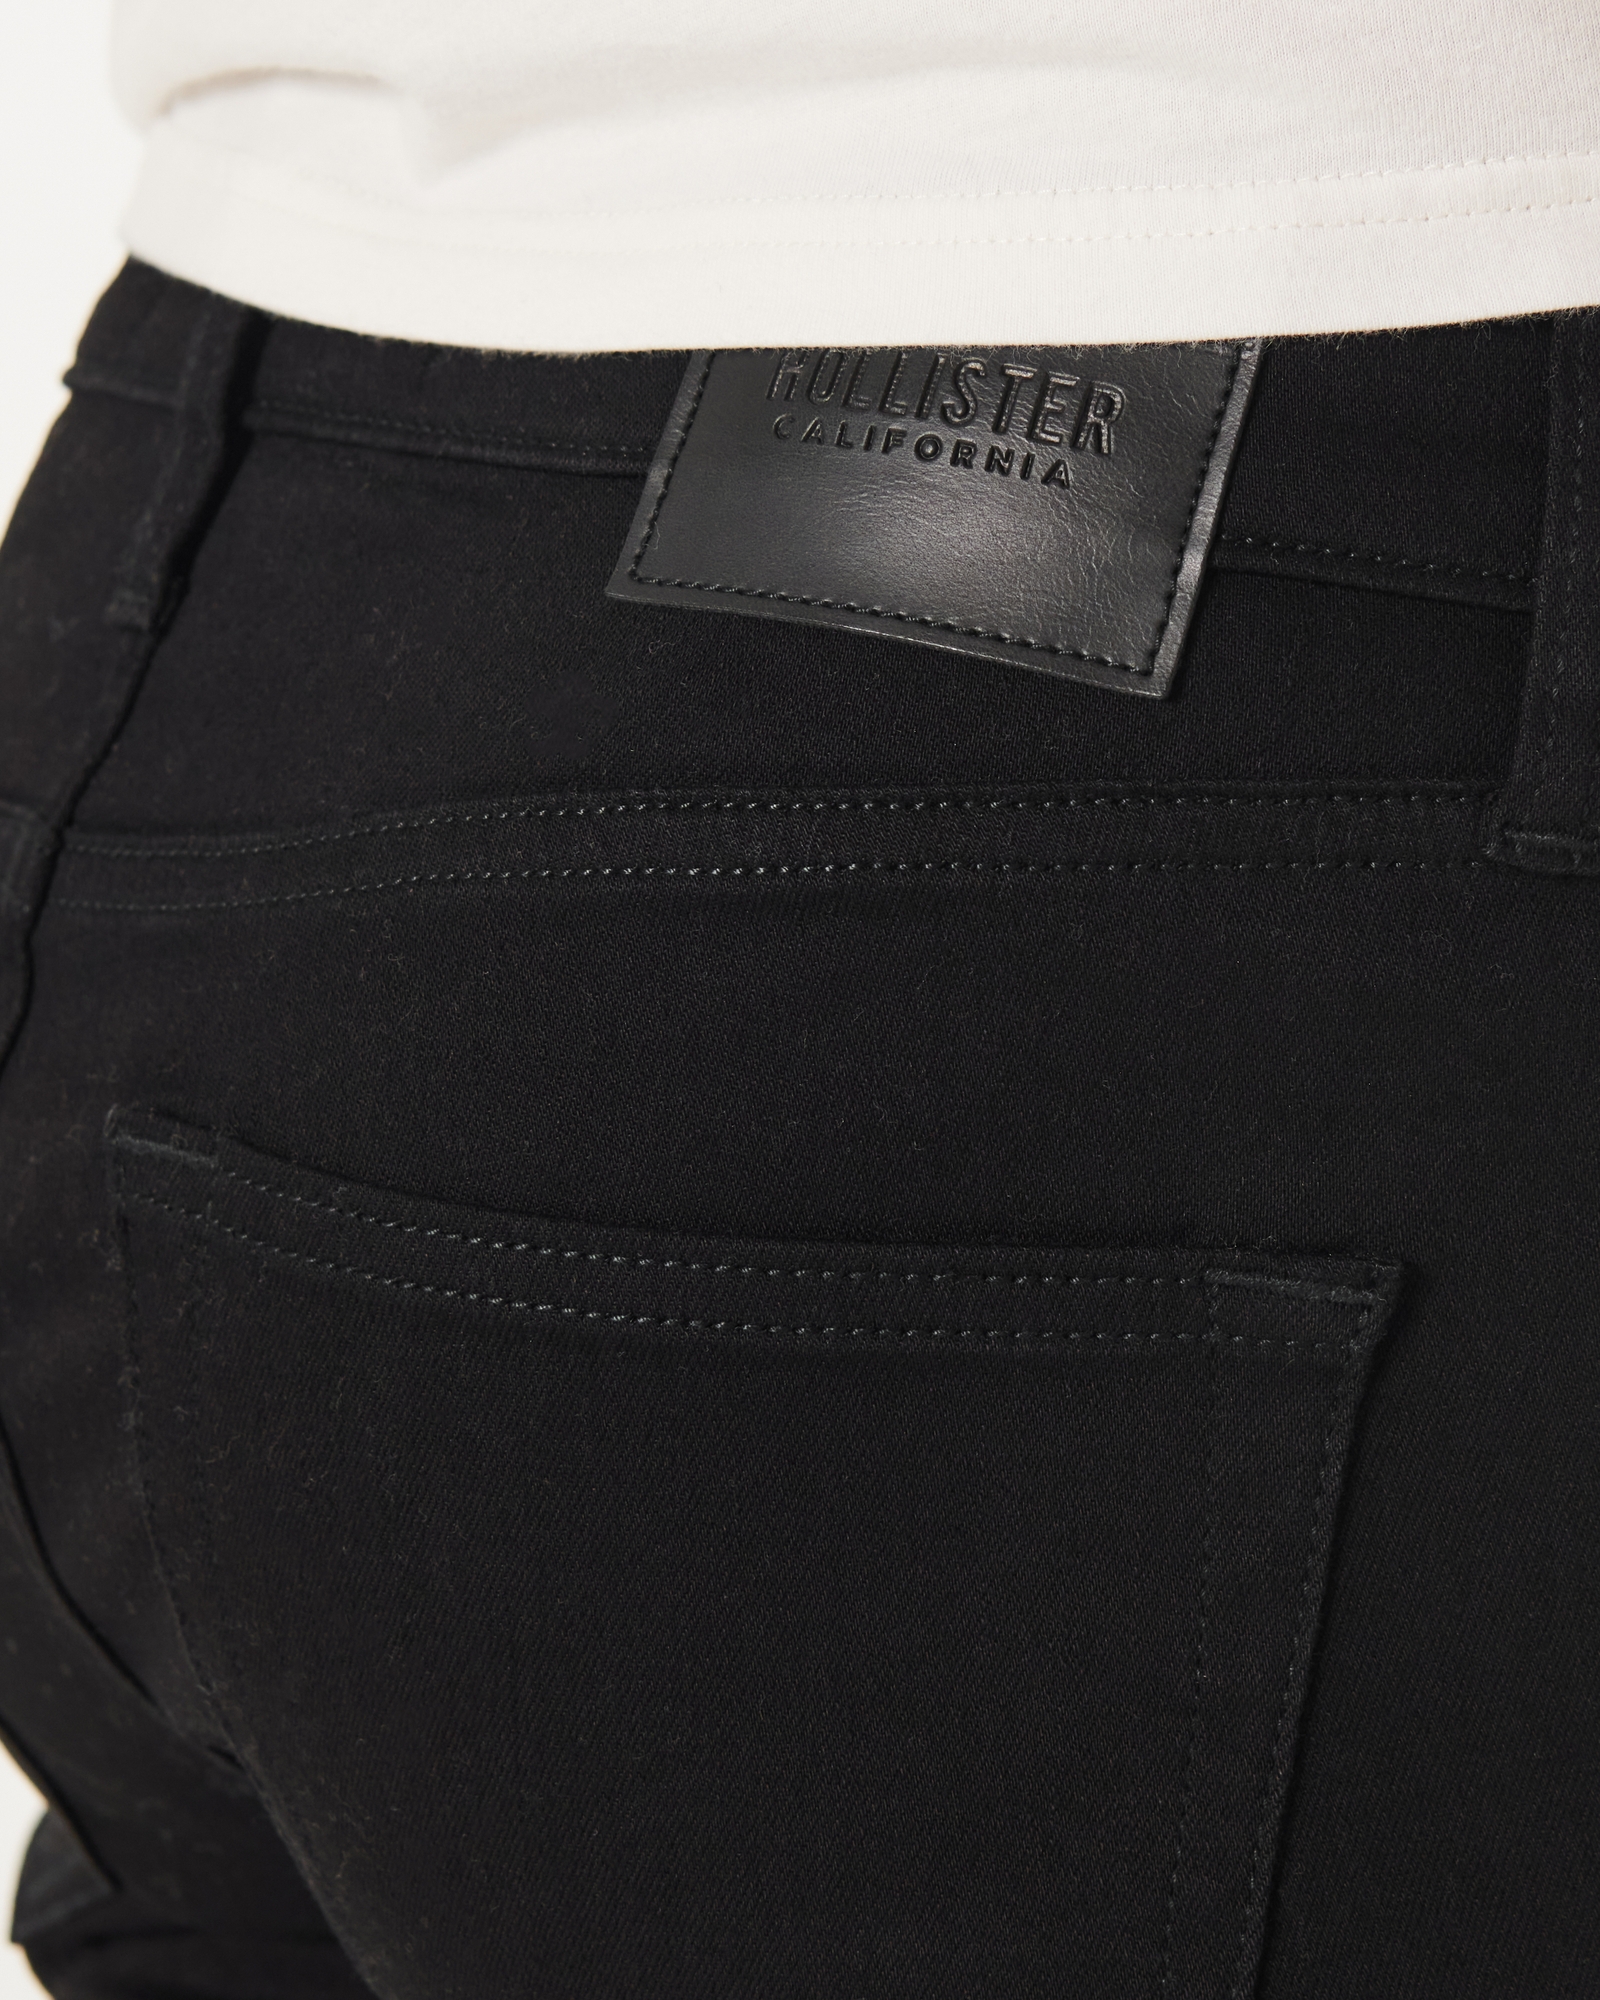 Hollister Jeans Coupe Slim Homme De Couleur Noir 1825818-noir00 - Modz